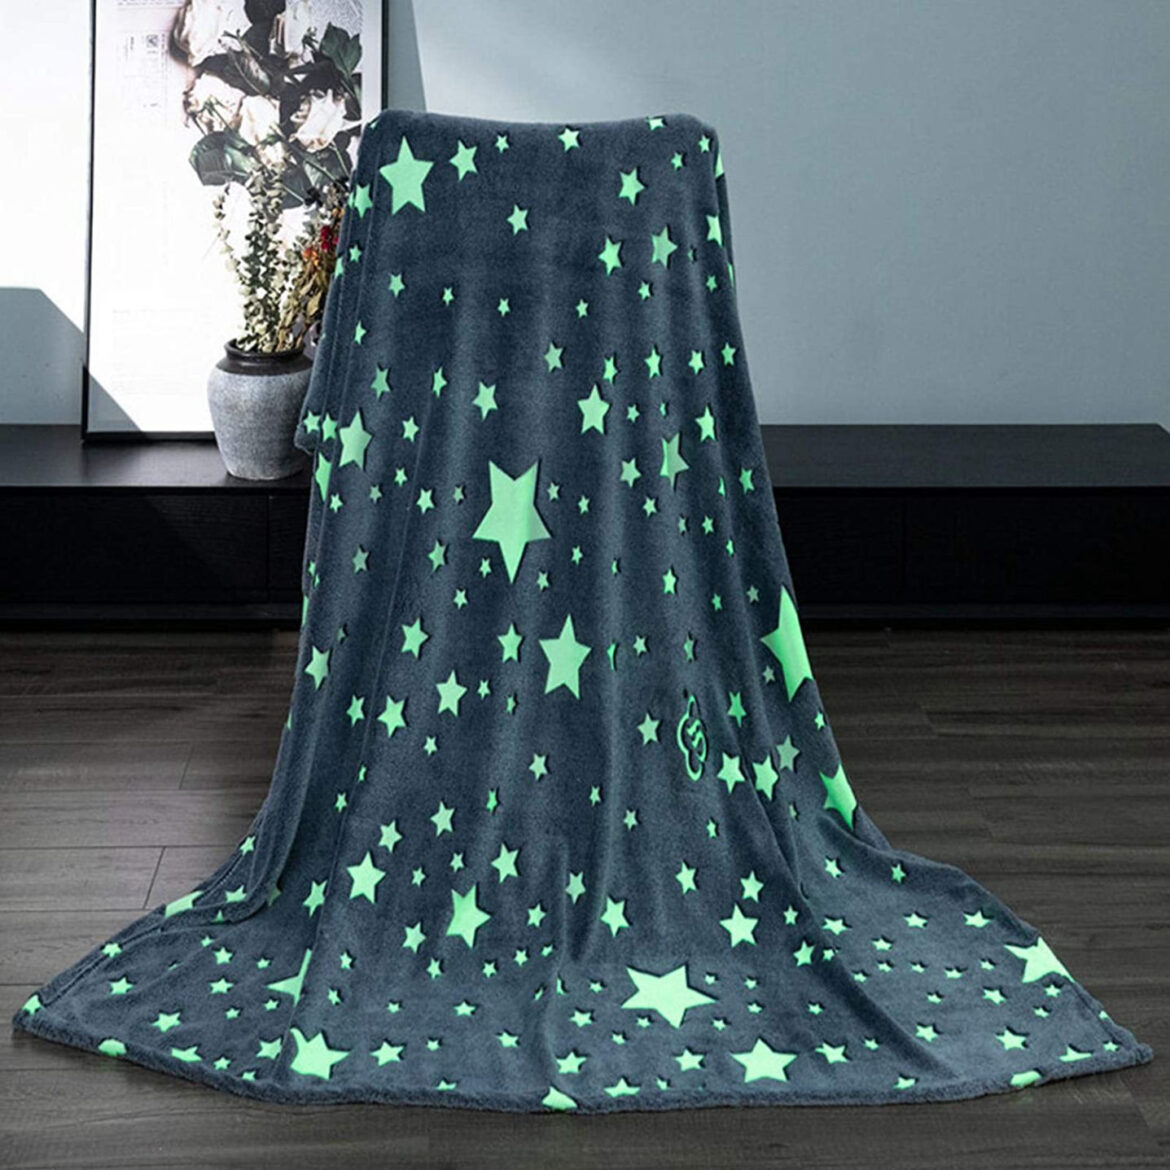 Magic Blanket: acquisto della coperta che si illumina al buio, opinioni e recensioni, prezzo